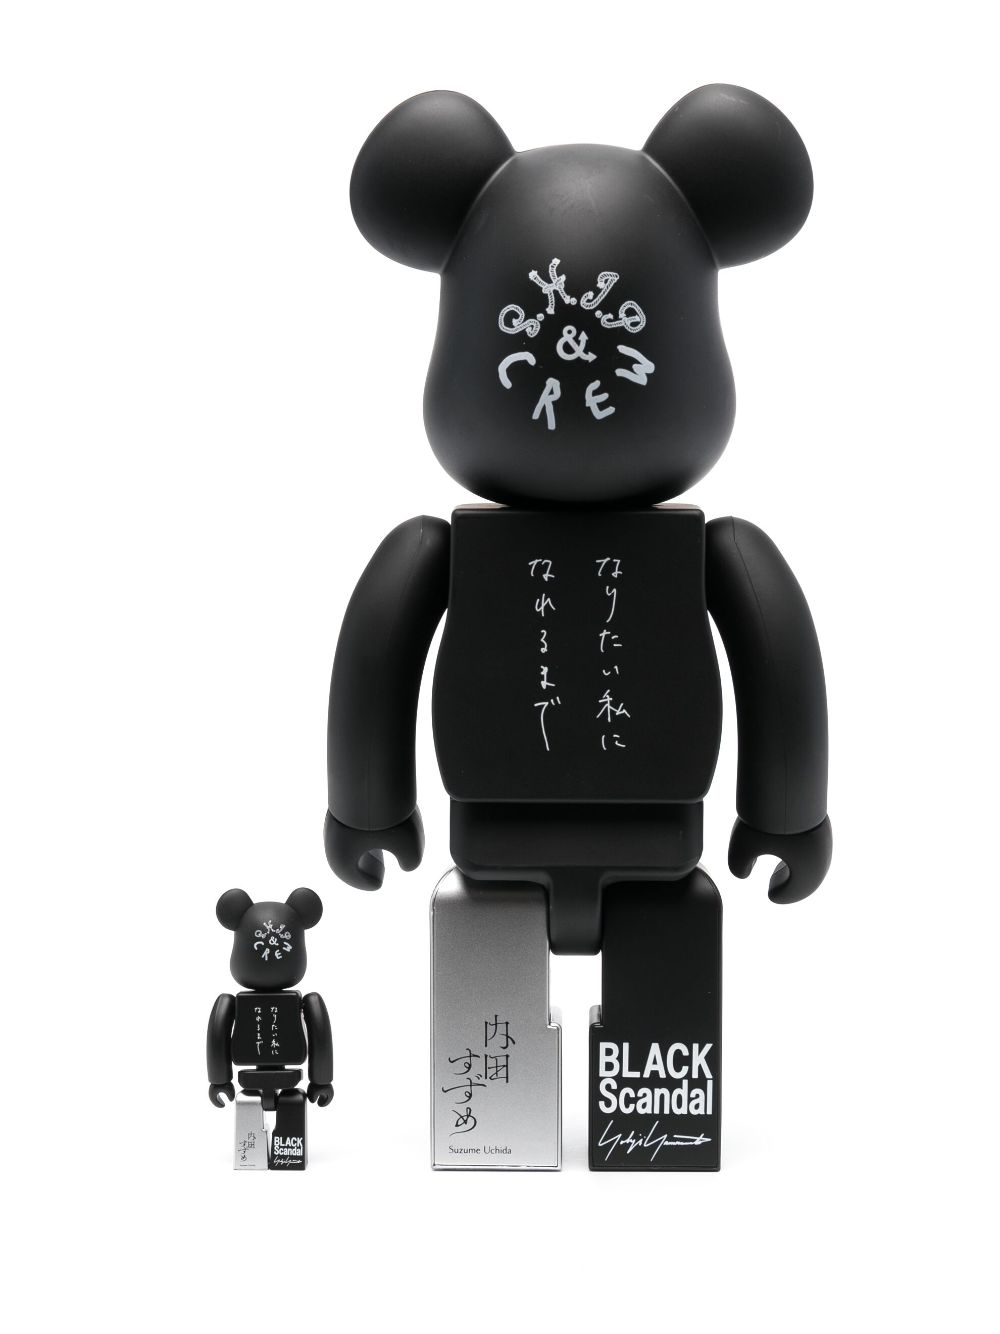 Medicom Toy Be@rbrick Yohji Yamamoto x Suzume Ushida Ideal Self 100% en 400% figuren - Zwart